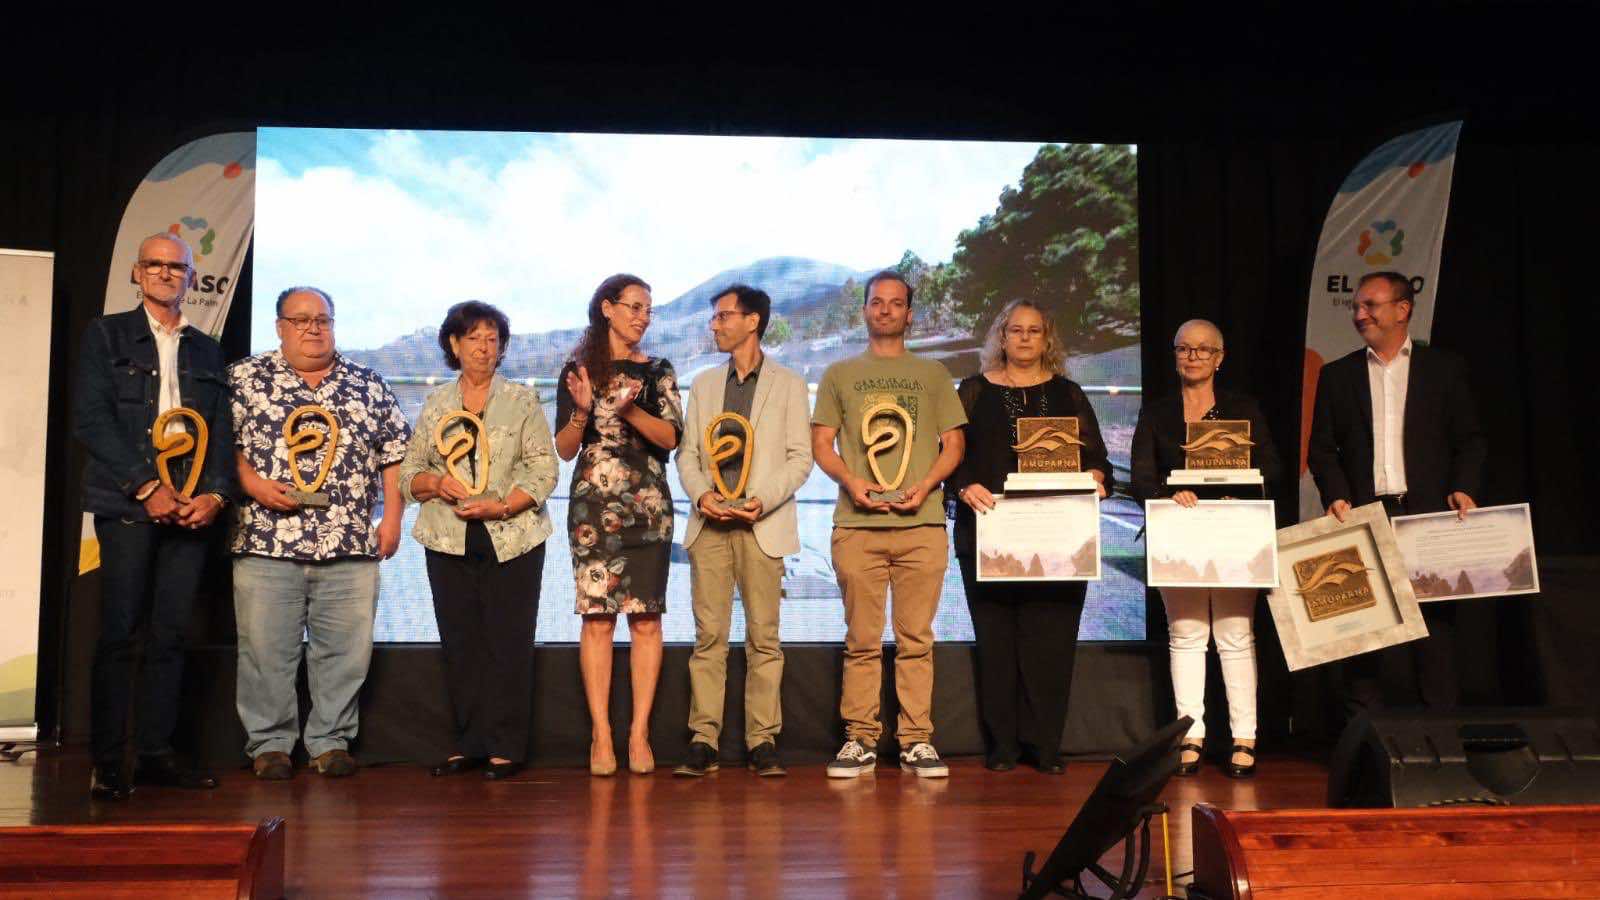 El Paso hace entrega de los Premios Caldera de Taburiente y Premio Amuparna 2022